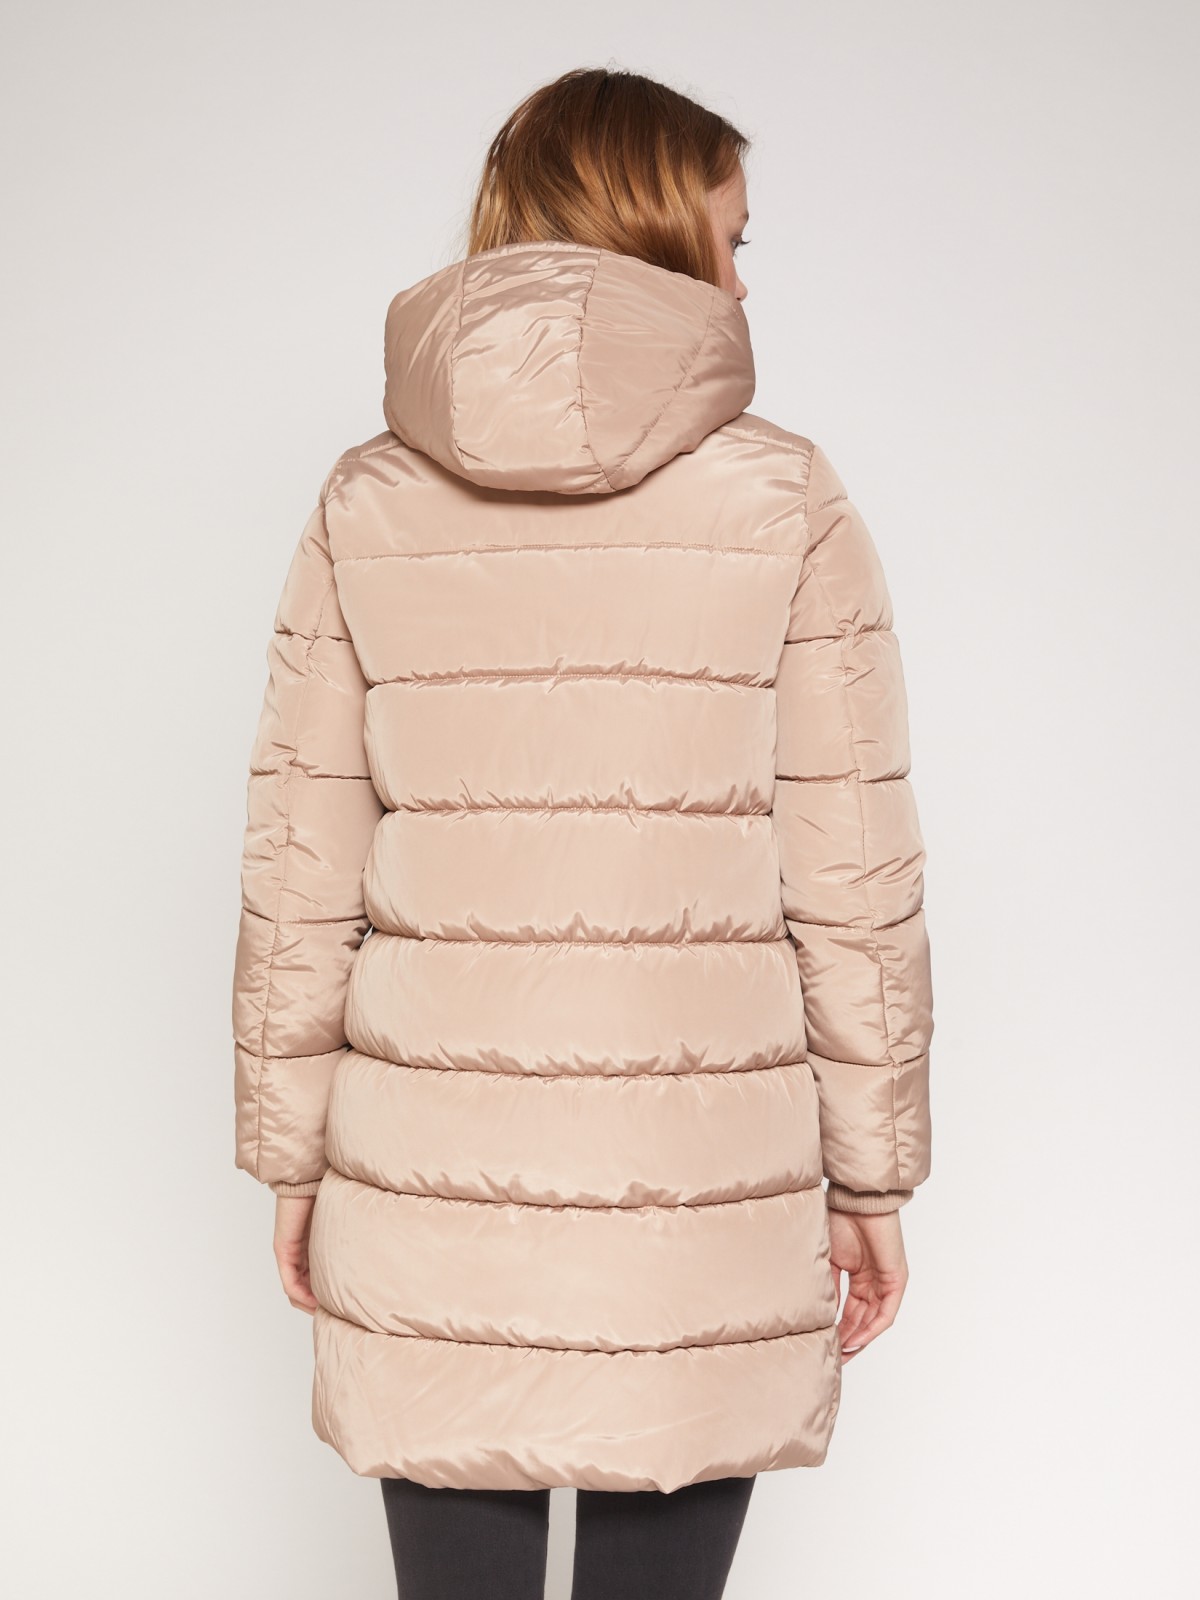 Утепленное стёганое пальто с капюшоном zolla 021335250034, цвет бежевый, размер XS - фото 3